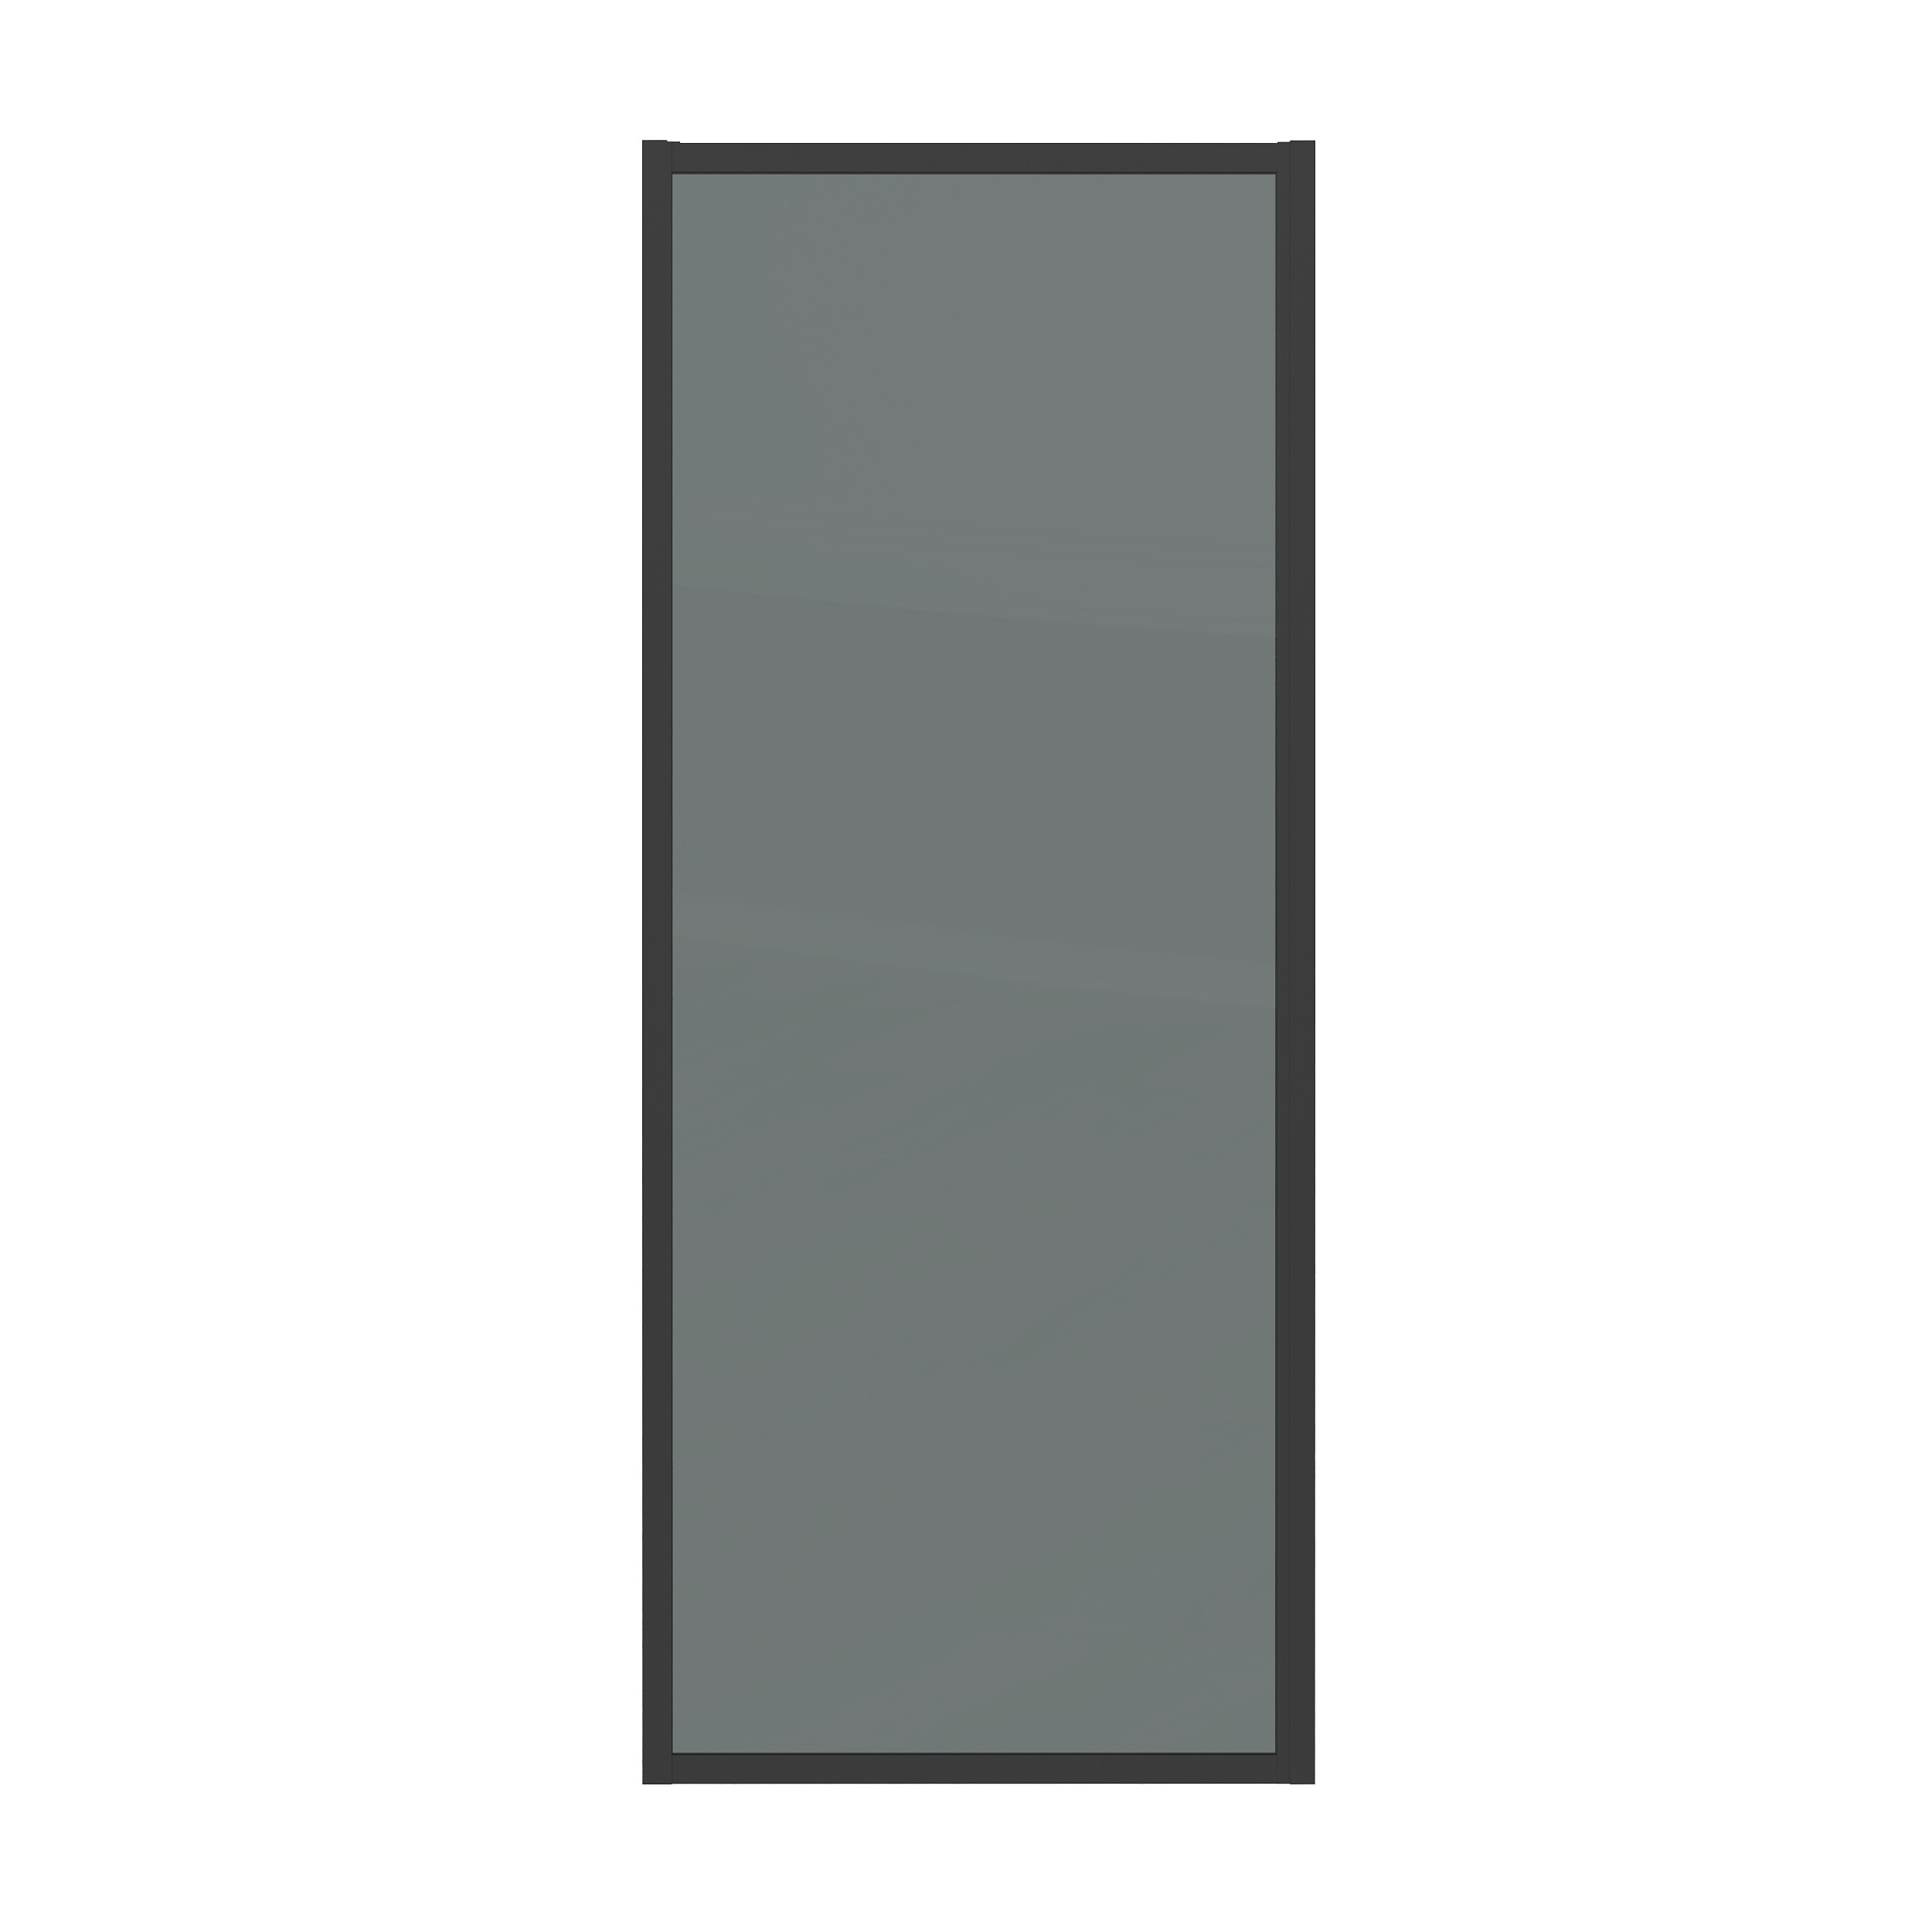 Боковая стенка Grossman Cosmo 70x195 200.K33.02.70.21.10 стекло тонированное, профиль черный матовый